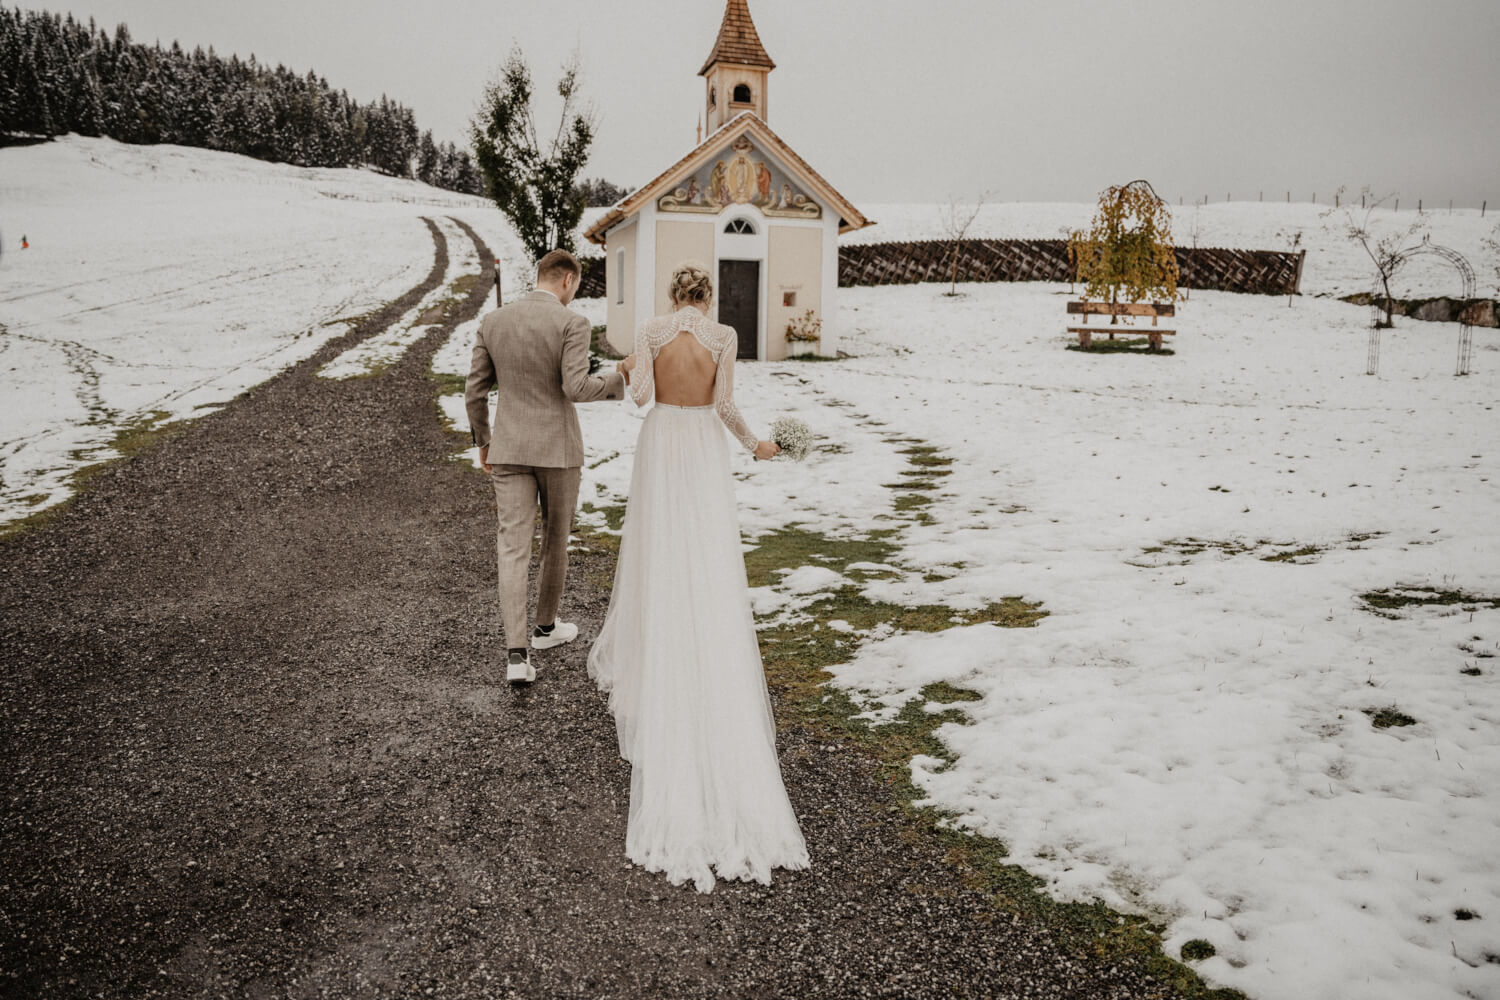 Winterliche Hochzeit in den Bergen – gesehen bei frauimmer-herrewig.de